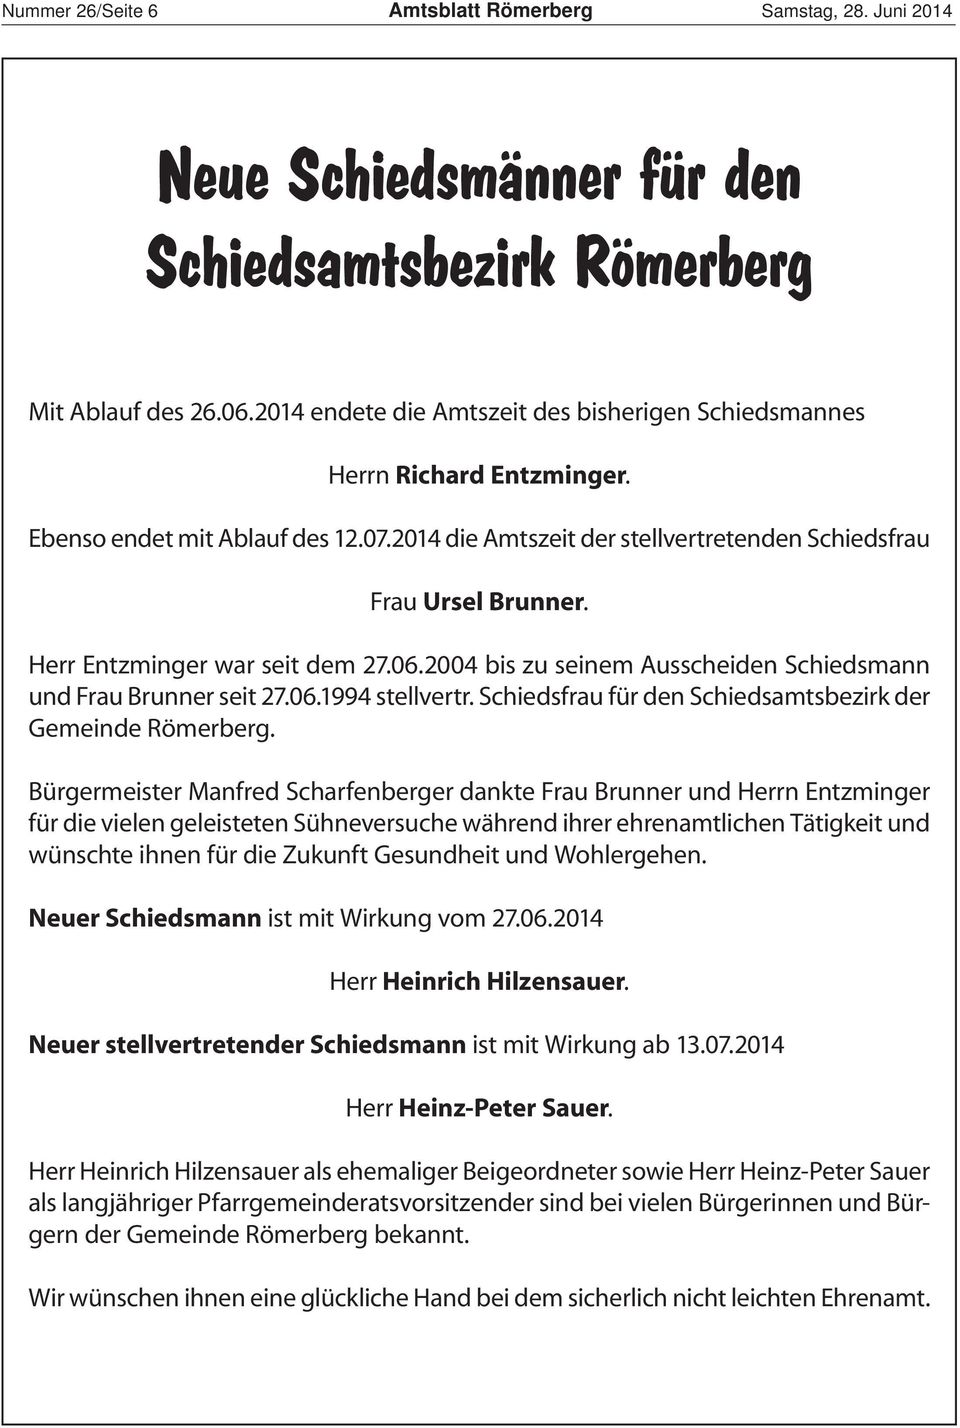 Herr Entzminger war seit dem 27.06.2004 bis zu seinem Ausscheiden Schiedsmann und Frau Brunner seit 27.06.994 stellvertr. Schiedsfrau für den Schiedsamtsbezirk der Gemeinde Römerberg.